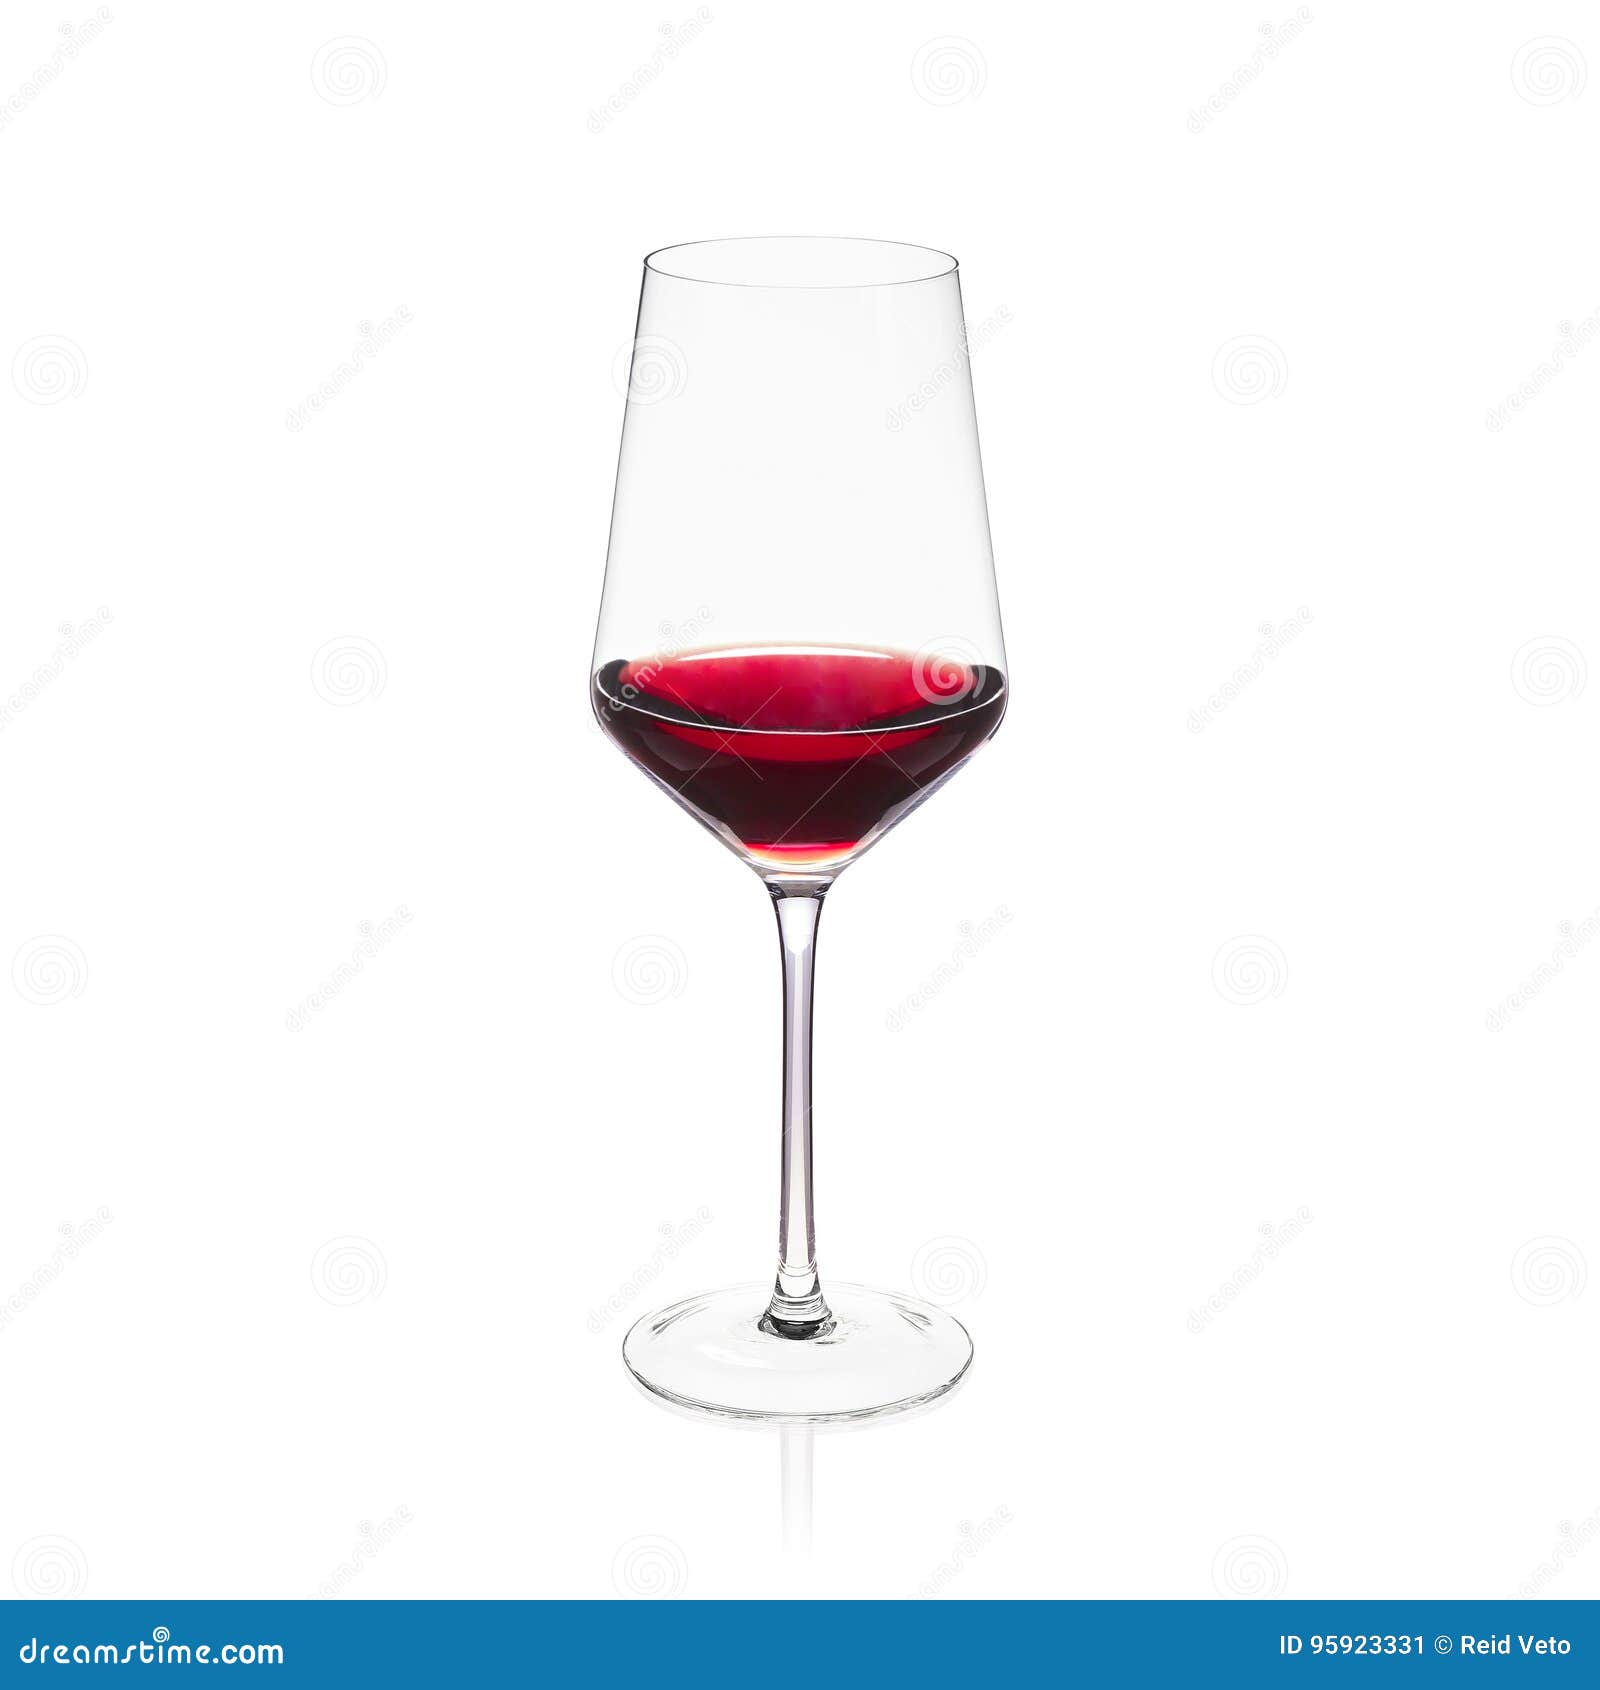 Aislante cristalino elegante de la copa de vino en el fondo blanco con el vino rojo. Copa de vino cristalina en el fondo blanco con el vino rojo en él